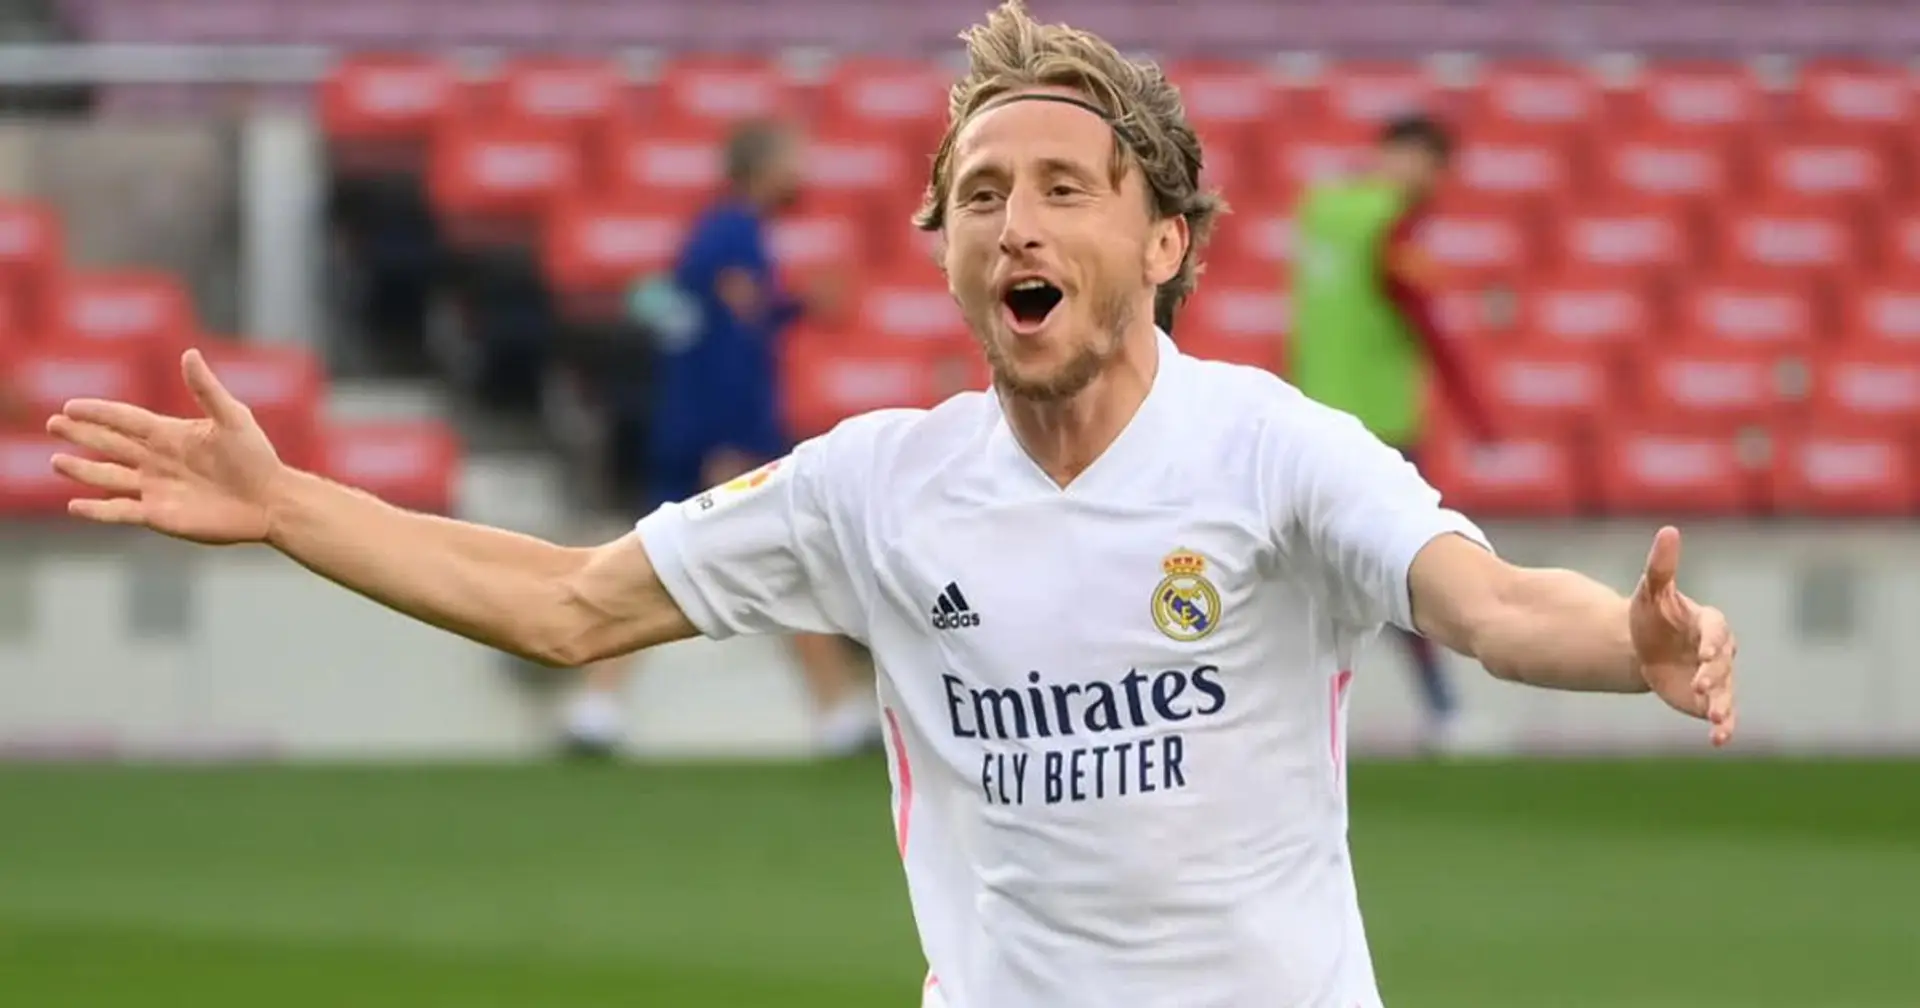 Exceptionnel: Modric, 35 ans, devrait commencer le 10e match consécutif pour le Real Madrid et la Croatie